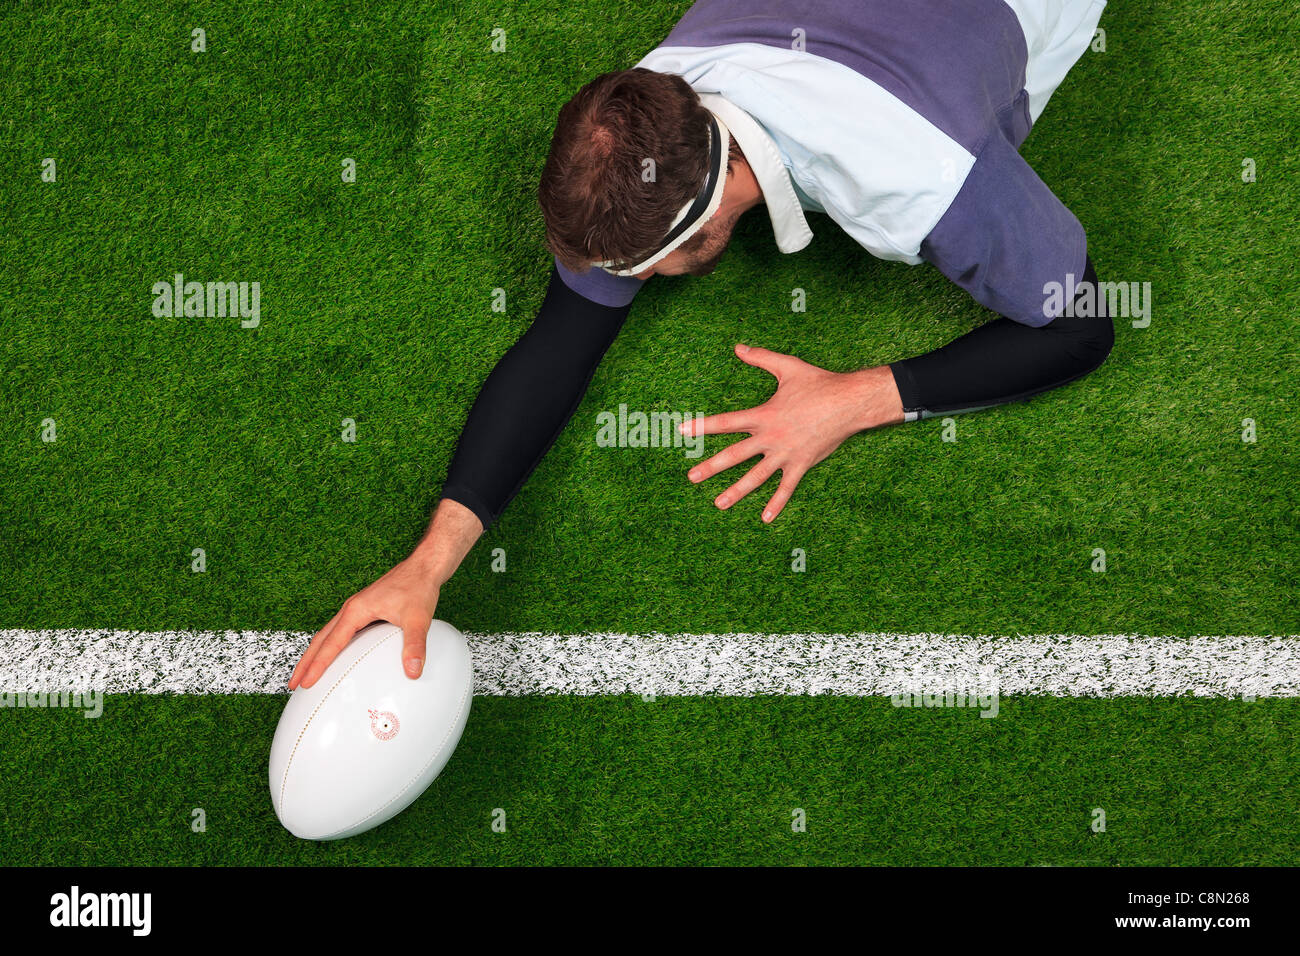 Foto aerea di un giocatore di rugby che si estende per oltre la linea al cliente una prova con una mano sulla sfera. Foto Stock